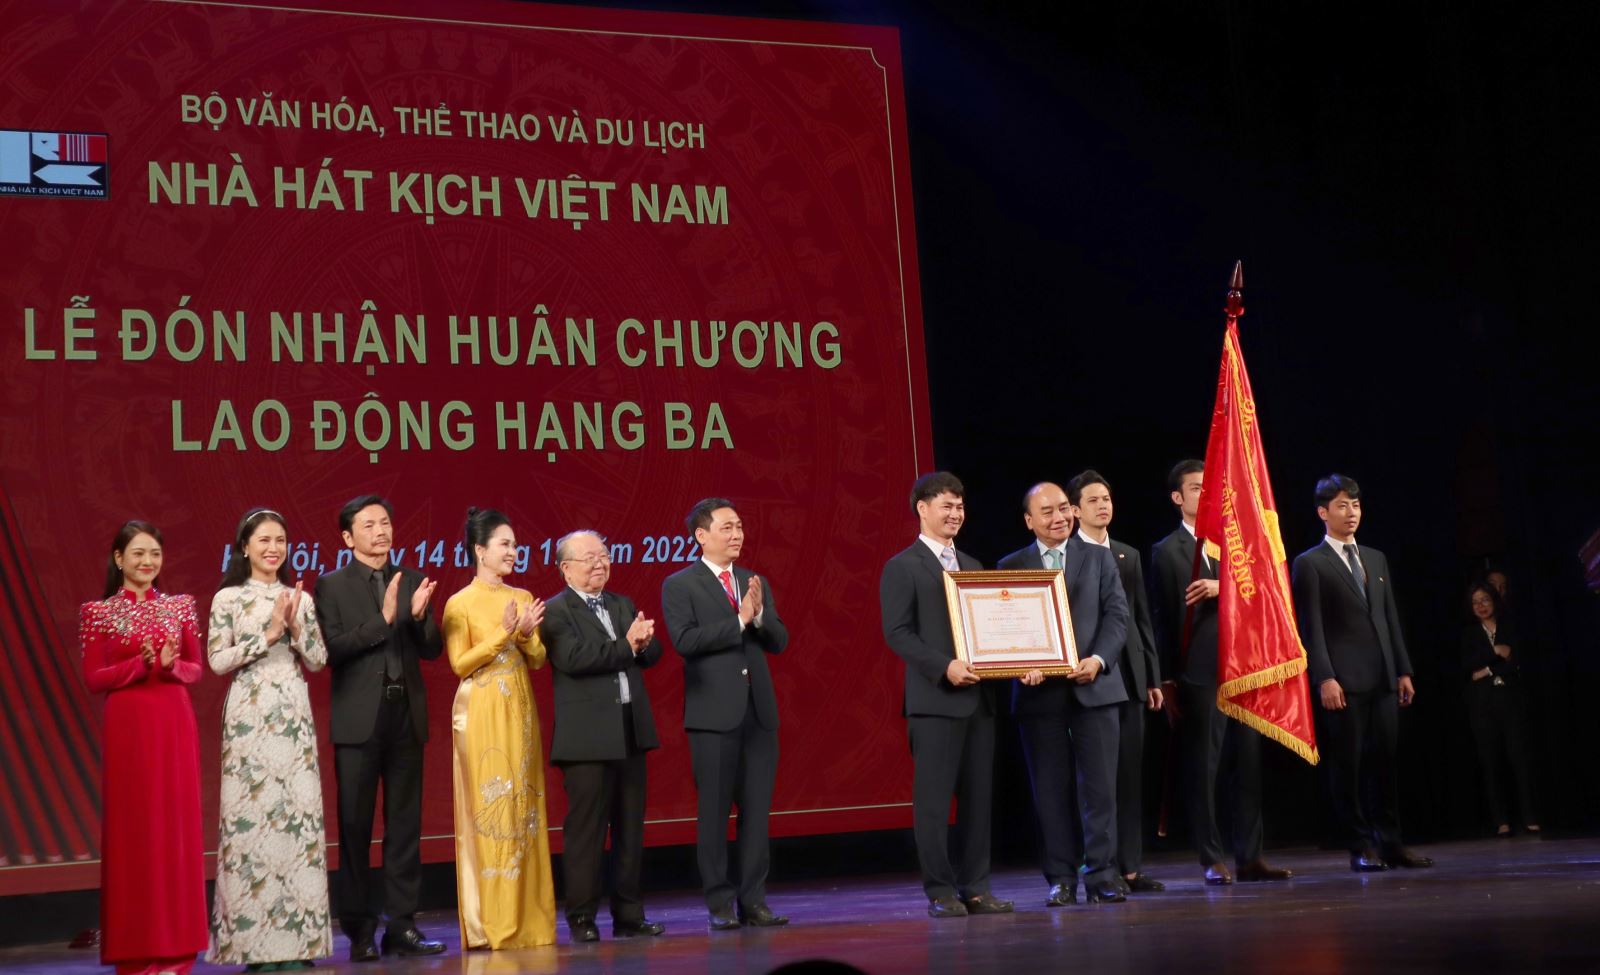 Nhà hát Kịch Việt Nam kỷ niệm 70 năm thành lập và đón nhận Huân chương Lao động hạng Ba